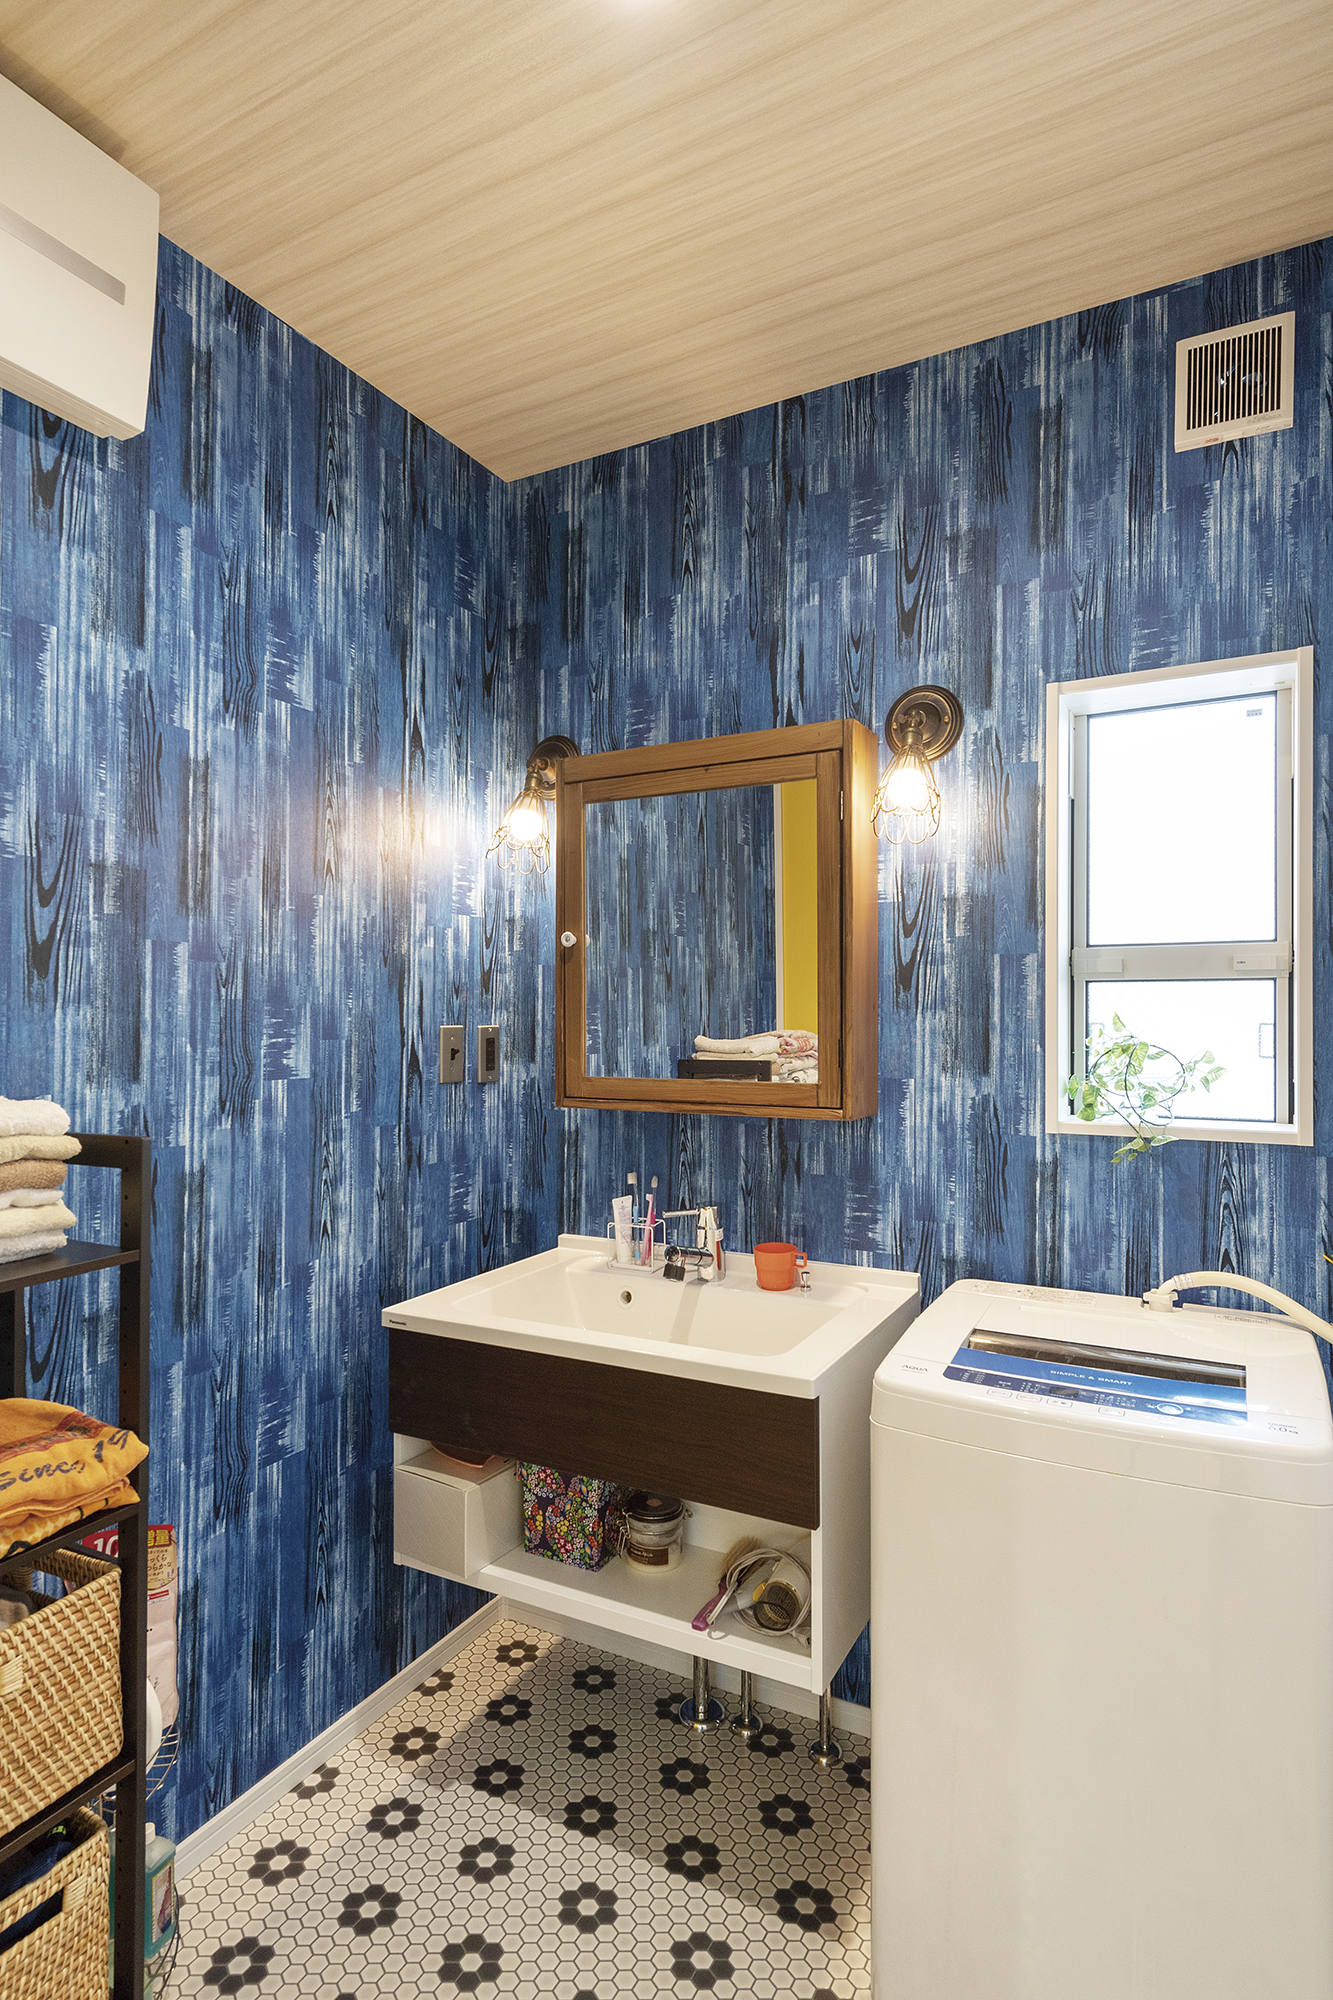 壁紙やフロア材に遊び⼼のある洗⾯室。フロート タイプの洗⾯台が空間を広く⾒せている